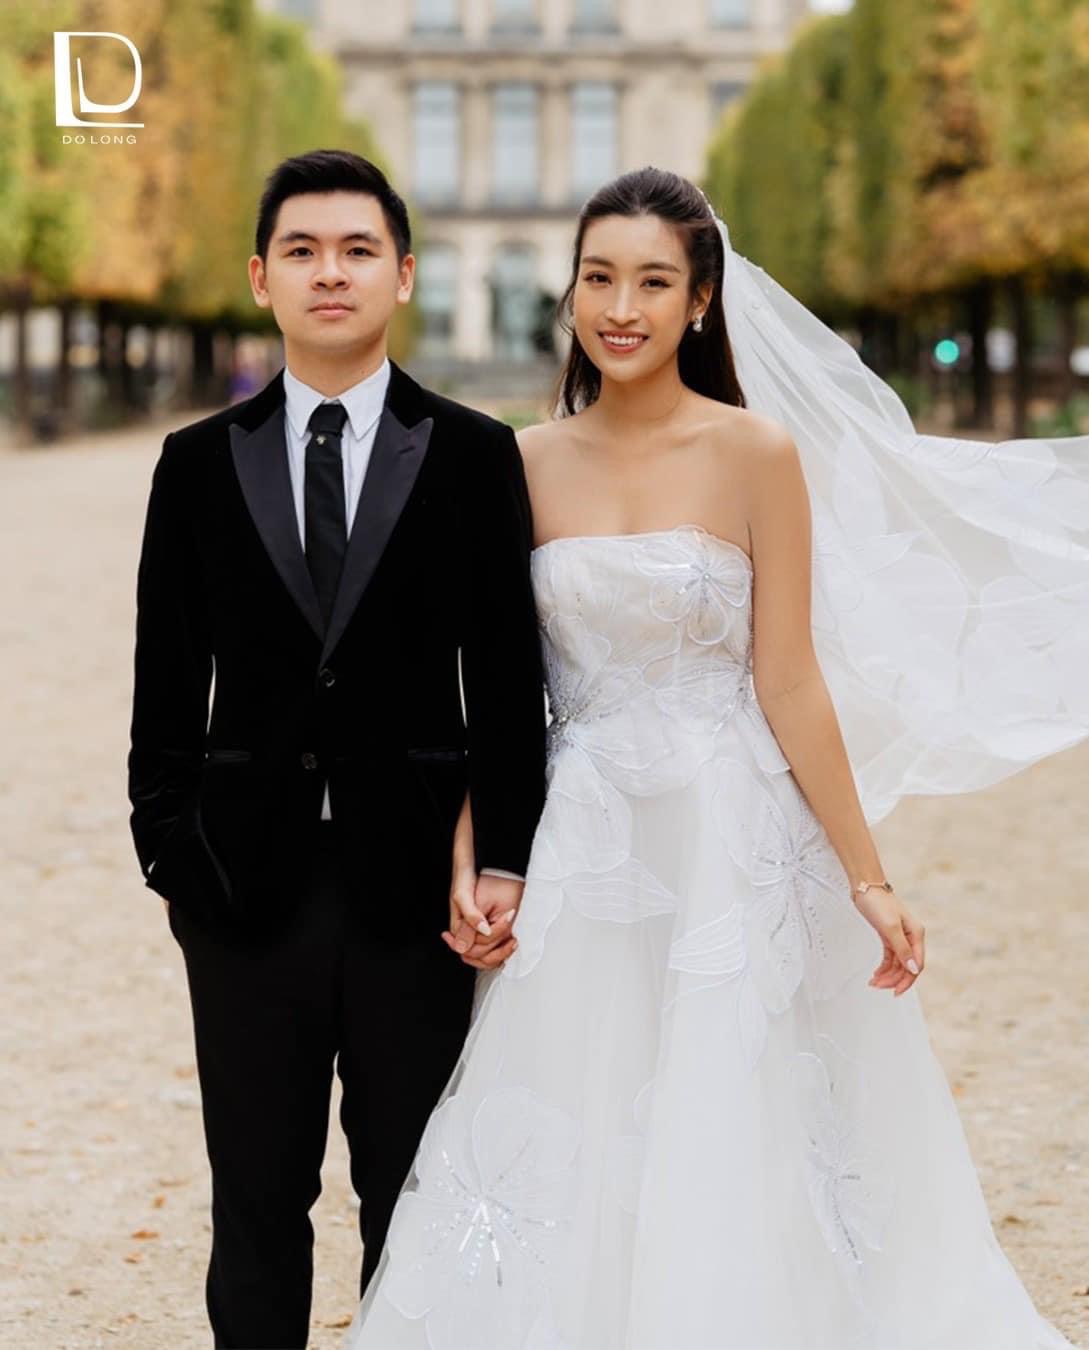 Hình cưới mới được tiết lộ của chủ tịch CLB Hà Nội với Đỗ Mỹ Linh - 1